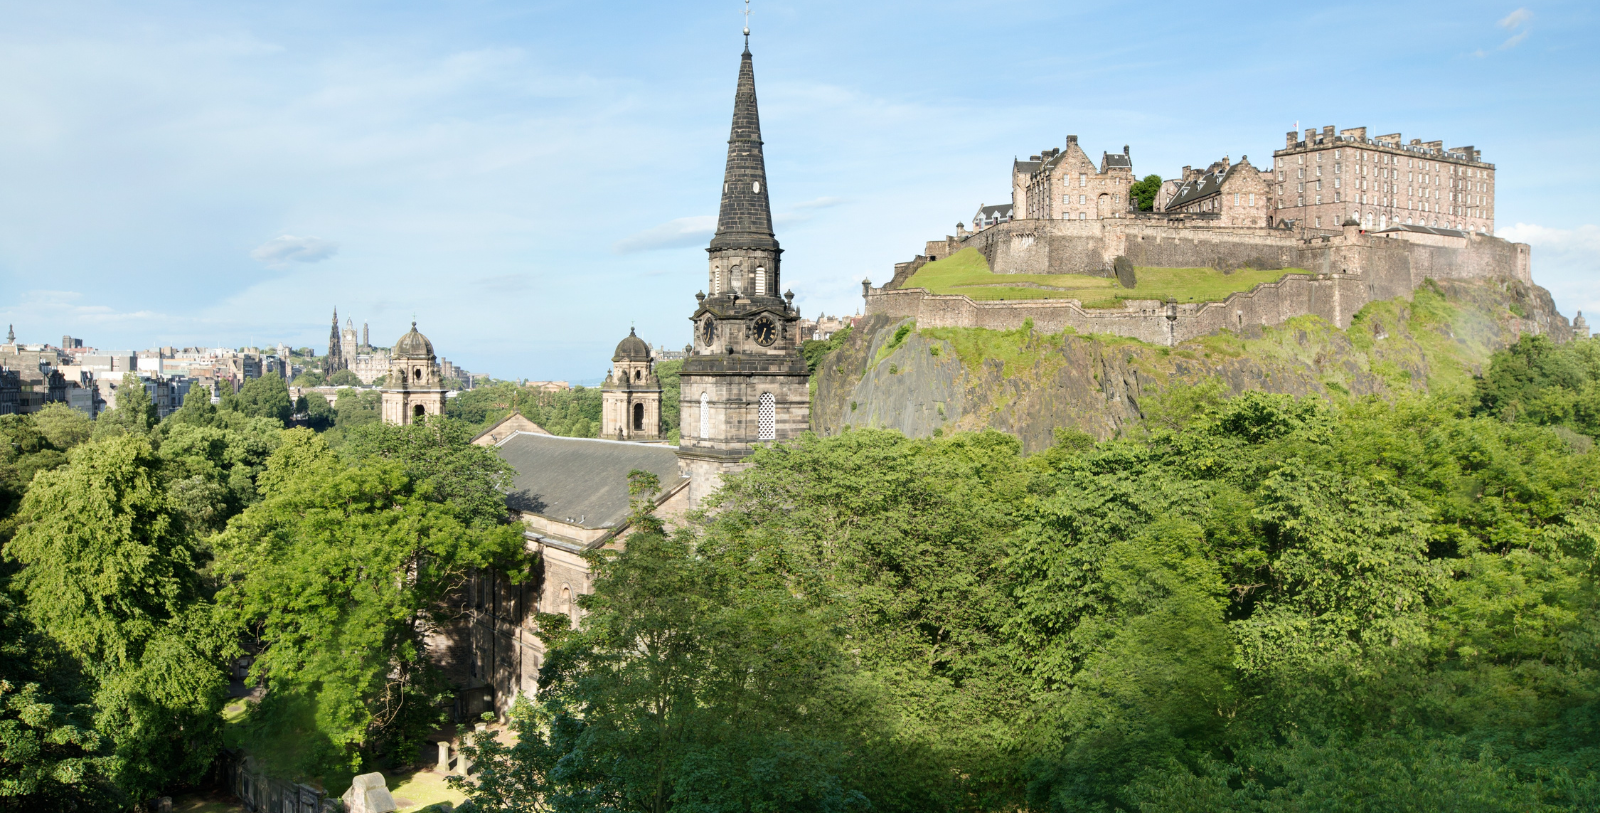 Explore Edinburgh Castle nearby.